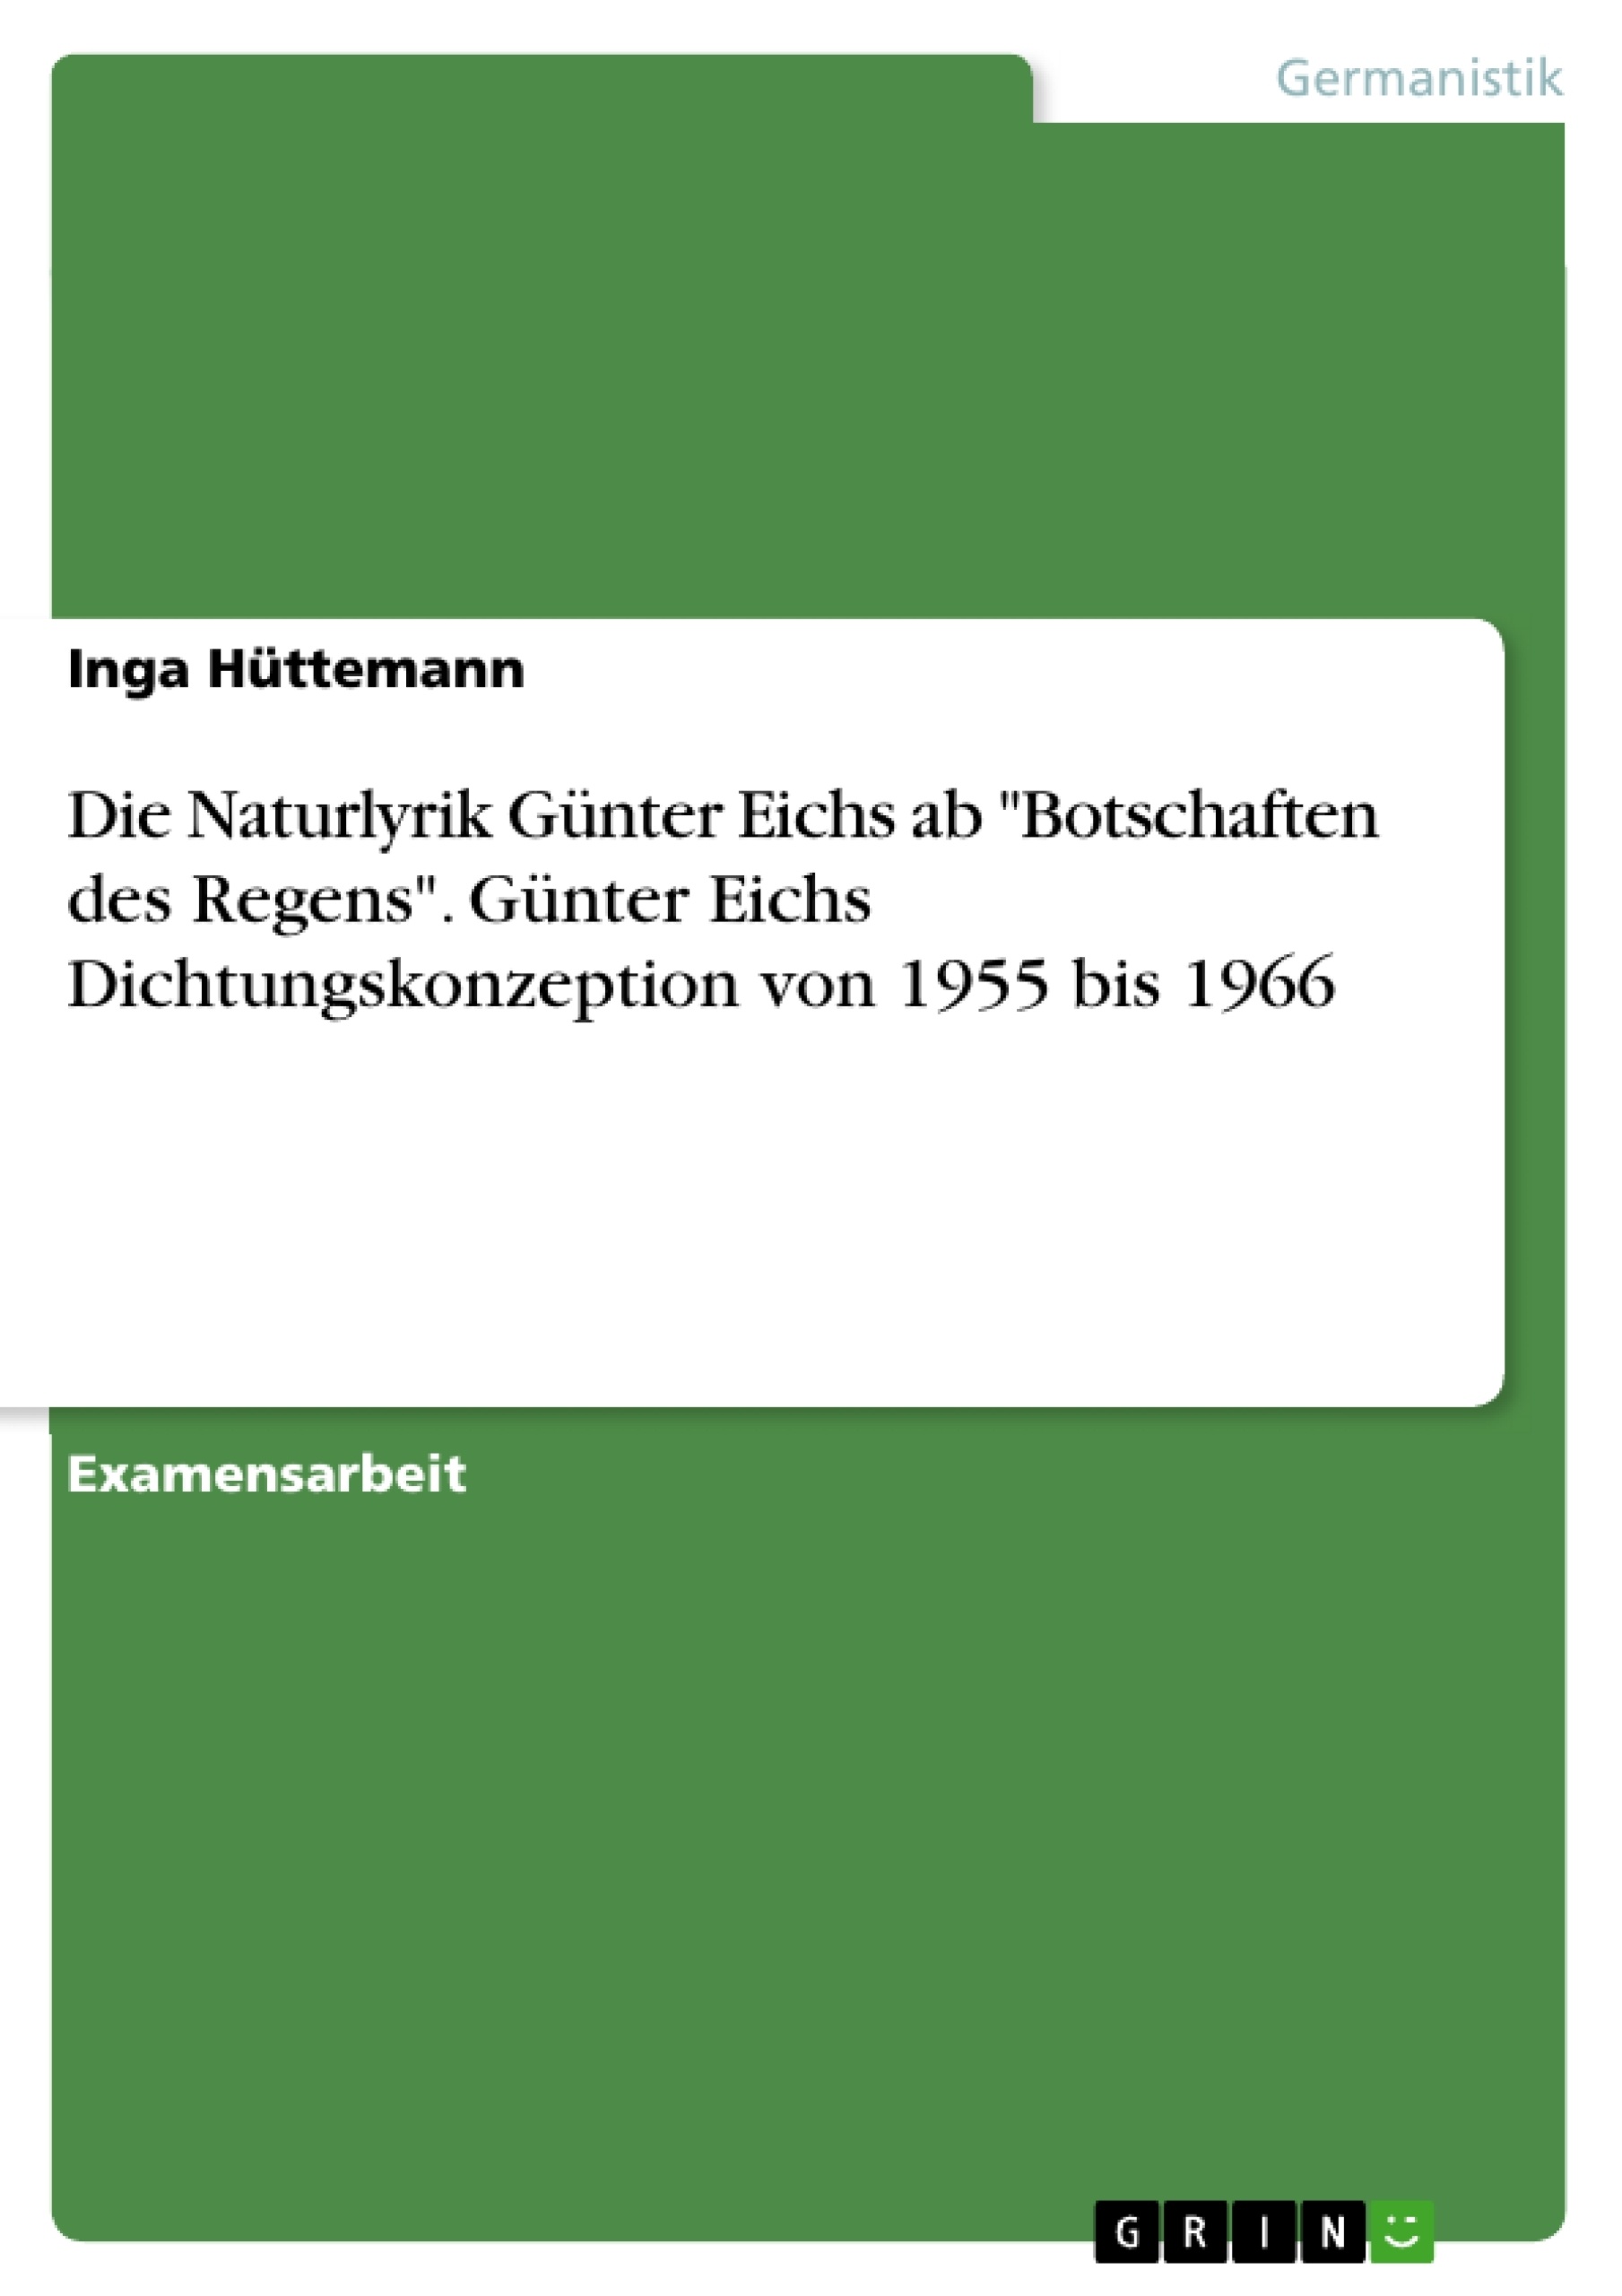 Título: Die Naturlyrik Günter Eichs ab "Botschaften des Regens". Günter Eichs Dichtungskonzeption von 1955 bis 1966